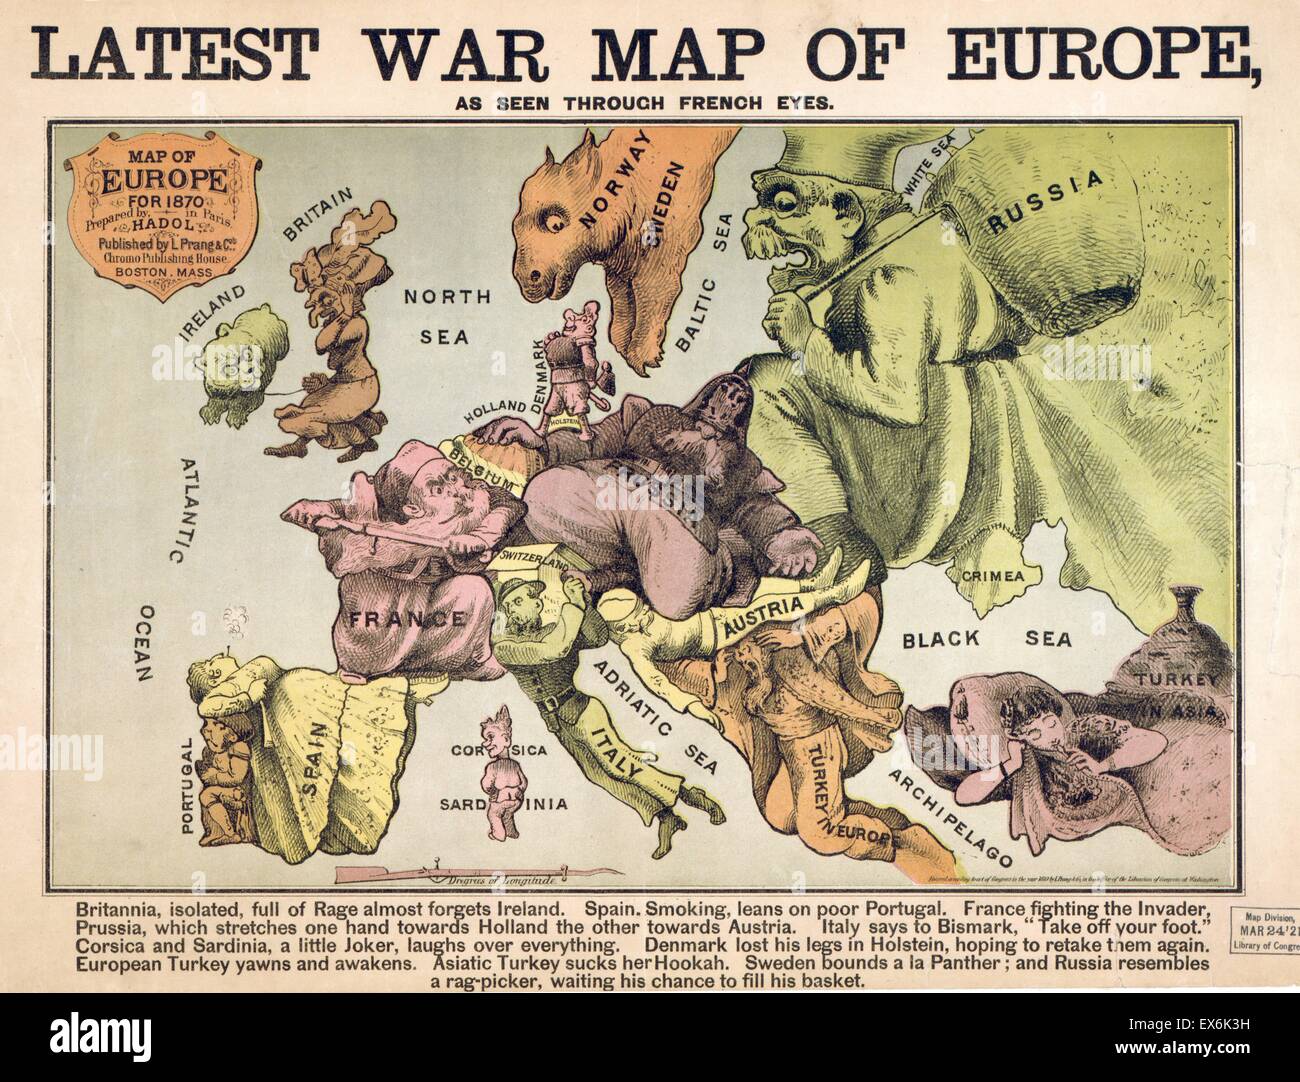 Karte von Europa charakterisieren die rivalisierenden Großmächte nach dem Franco-Preussischer Krieg 1870 Stockfoto